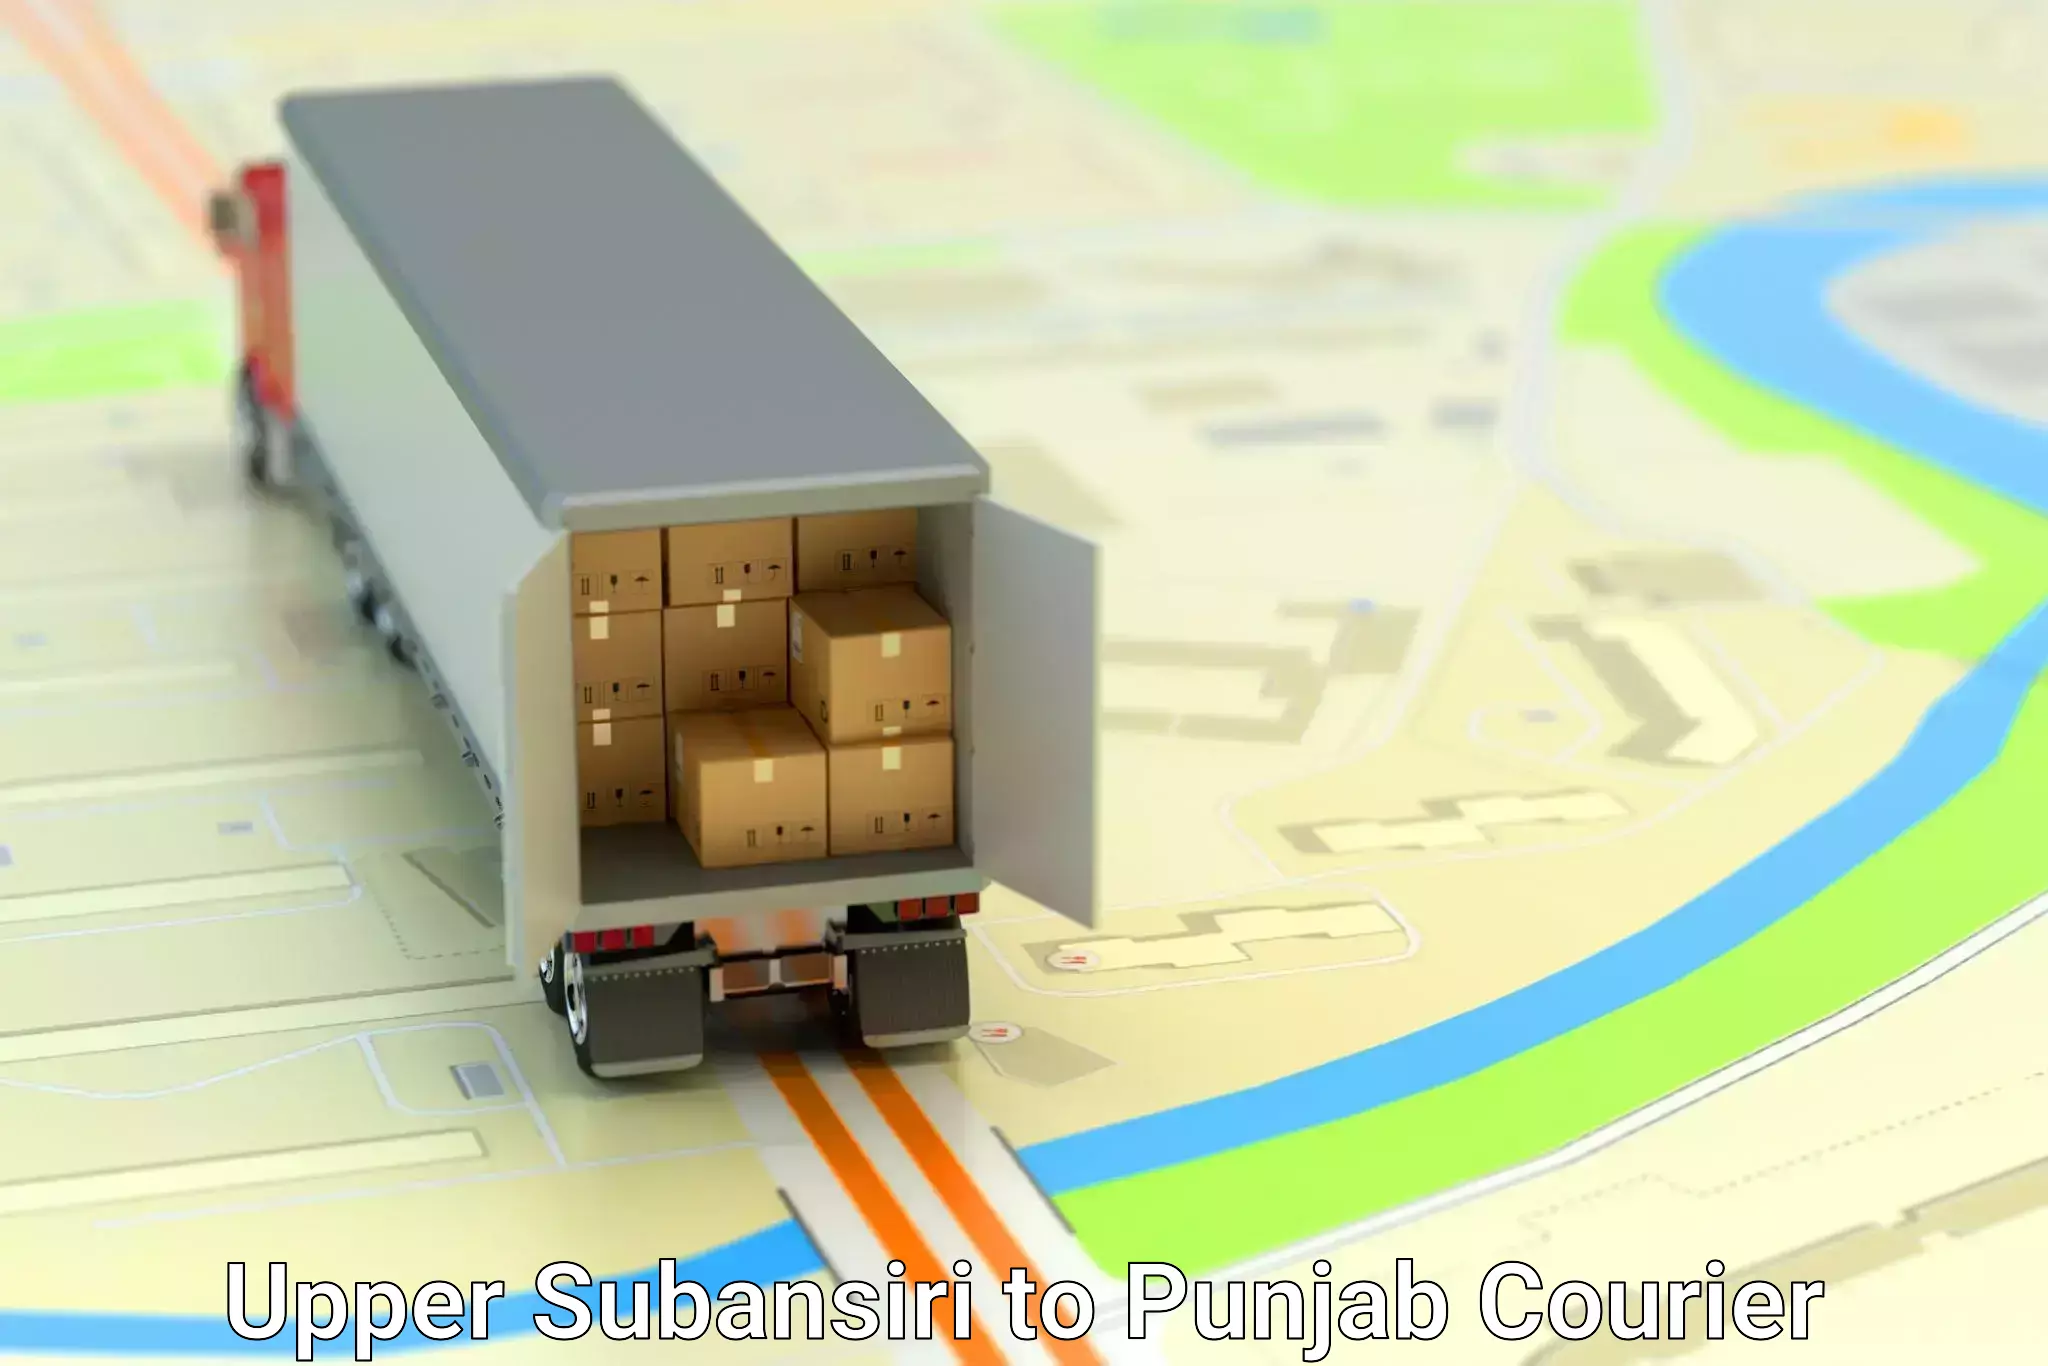 Tech-enabled shipping Upper Subansiri to Jalandhar